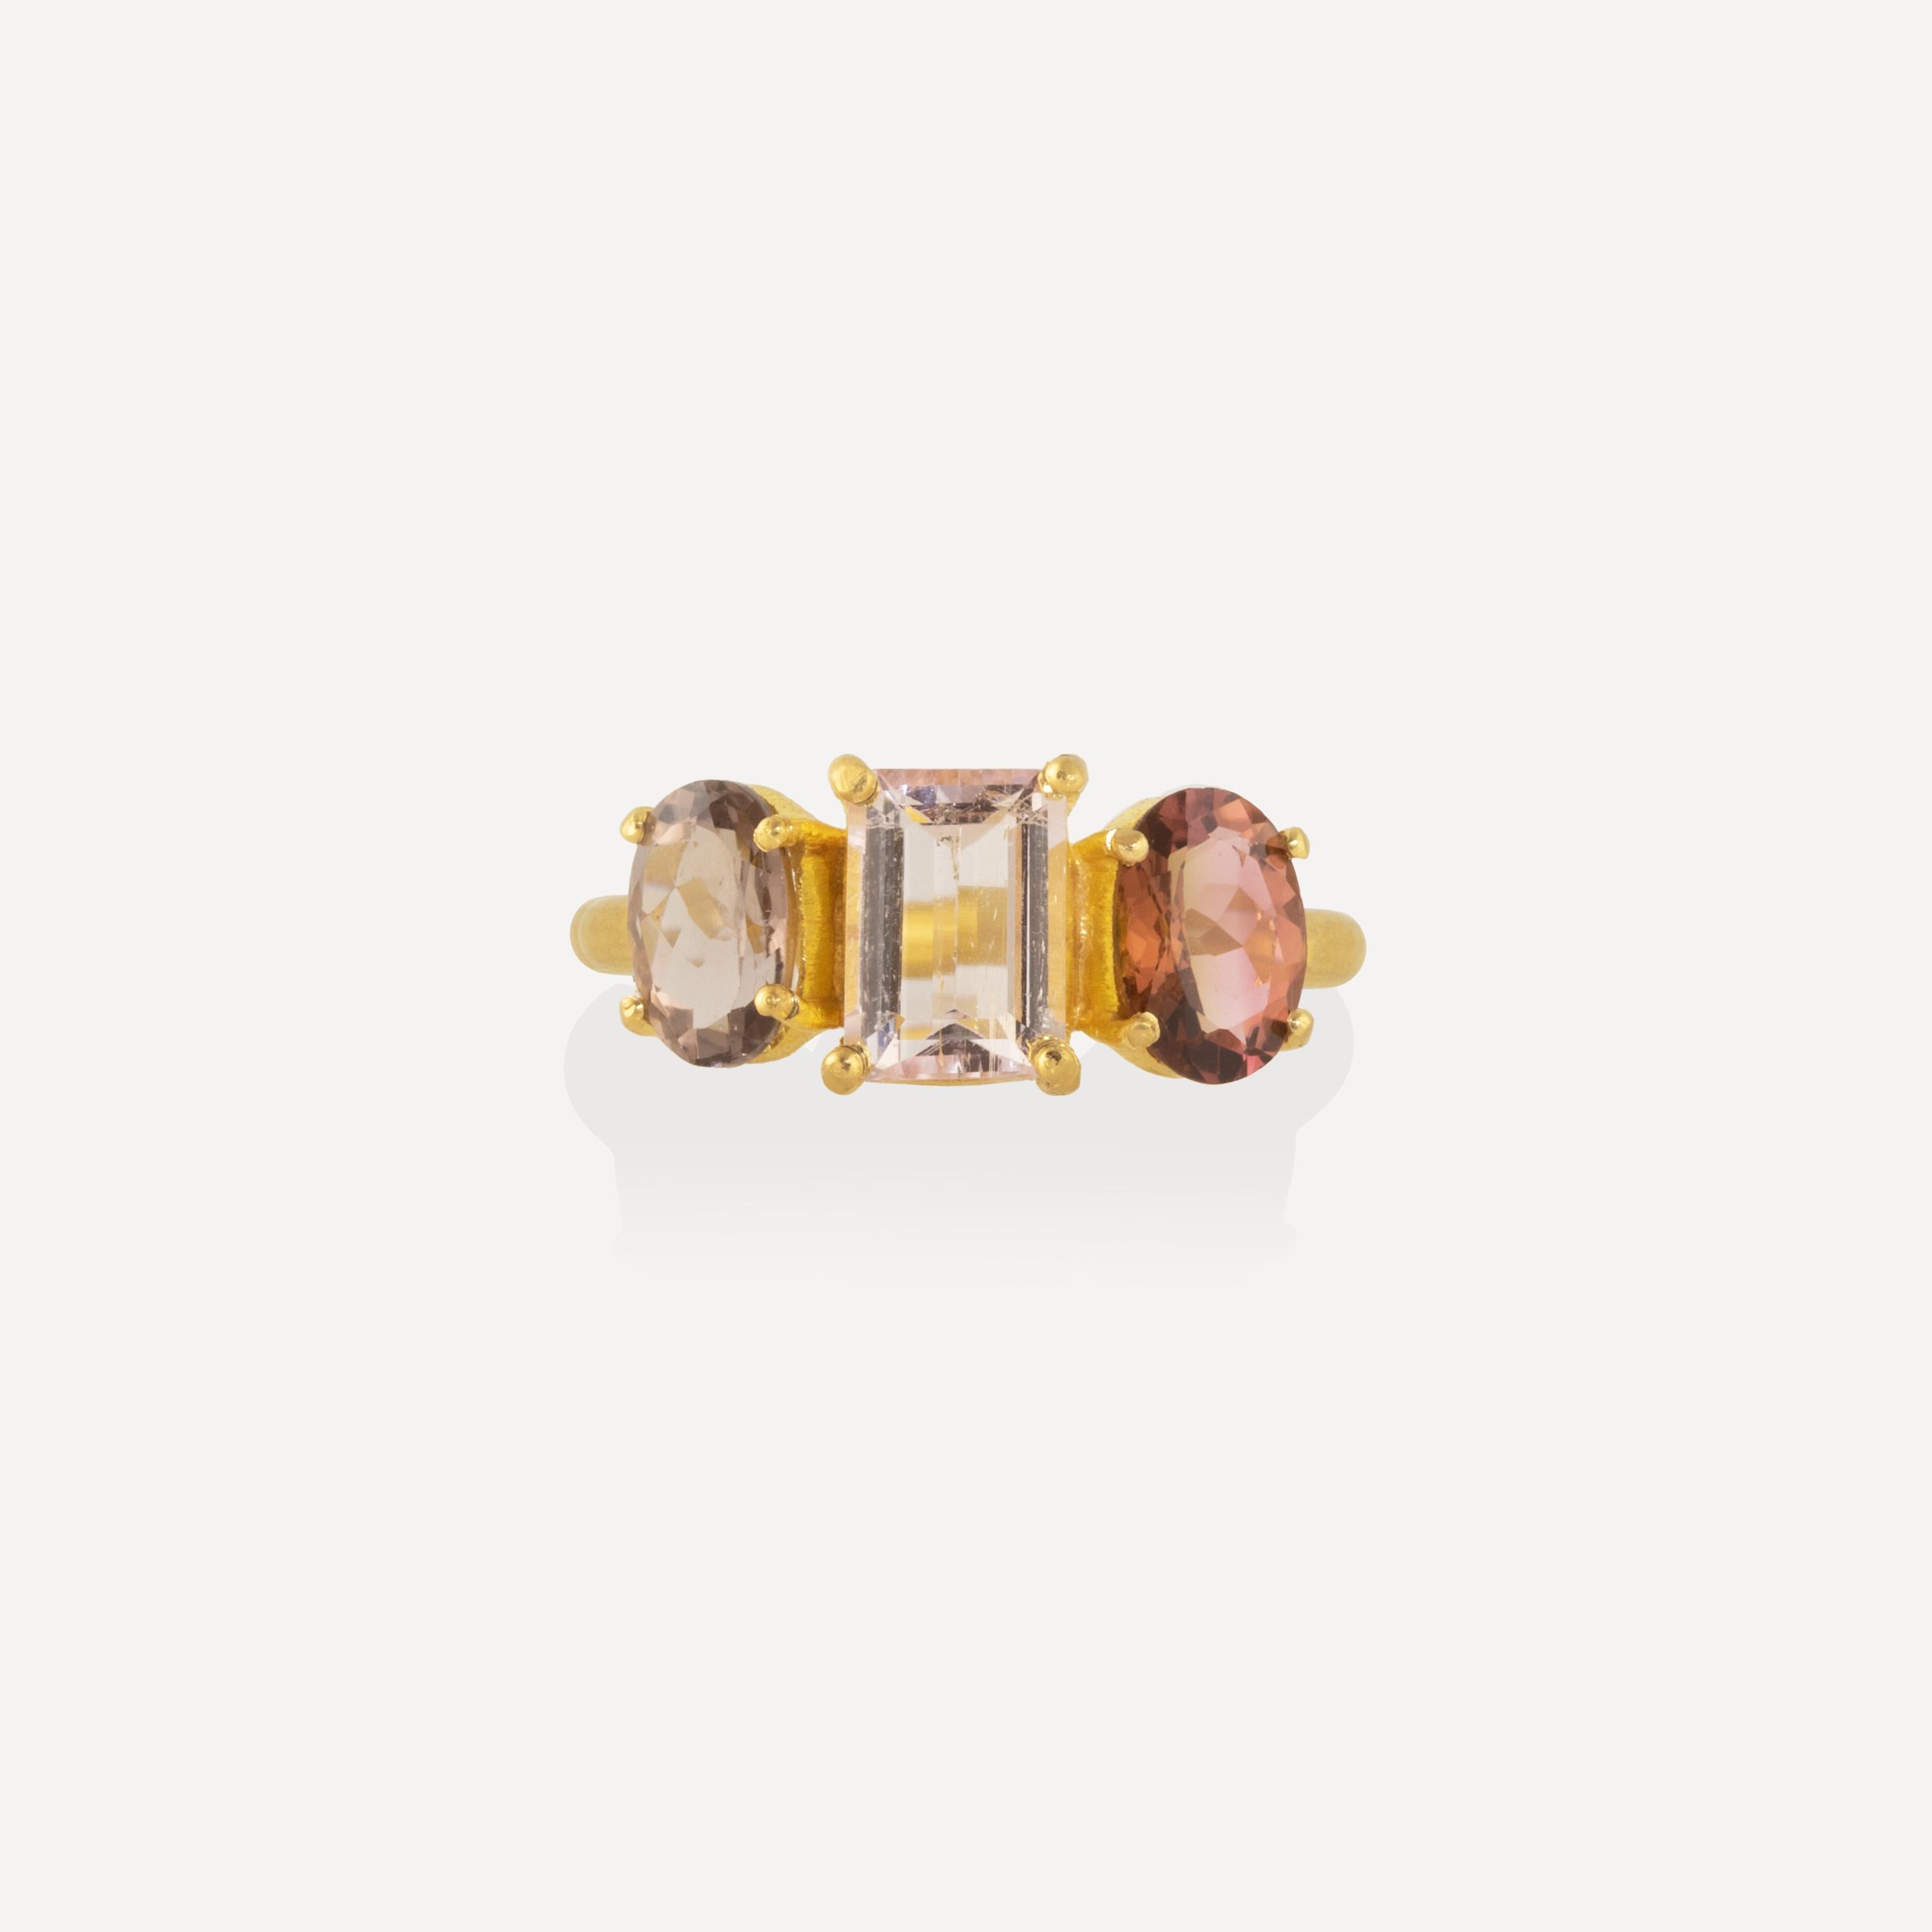 Ein zeitloser Ring mit 3,75 Karat mehrfarbigen Turmalinen. In der Mitte befindet sich ein hellrosafarbener Edelstein im Smaragdschliff, mit tieferen, komplementärfarbigen Ovalen an den Seiten. Die Edelsteine sind in 22-karätigem Gold gefasst und